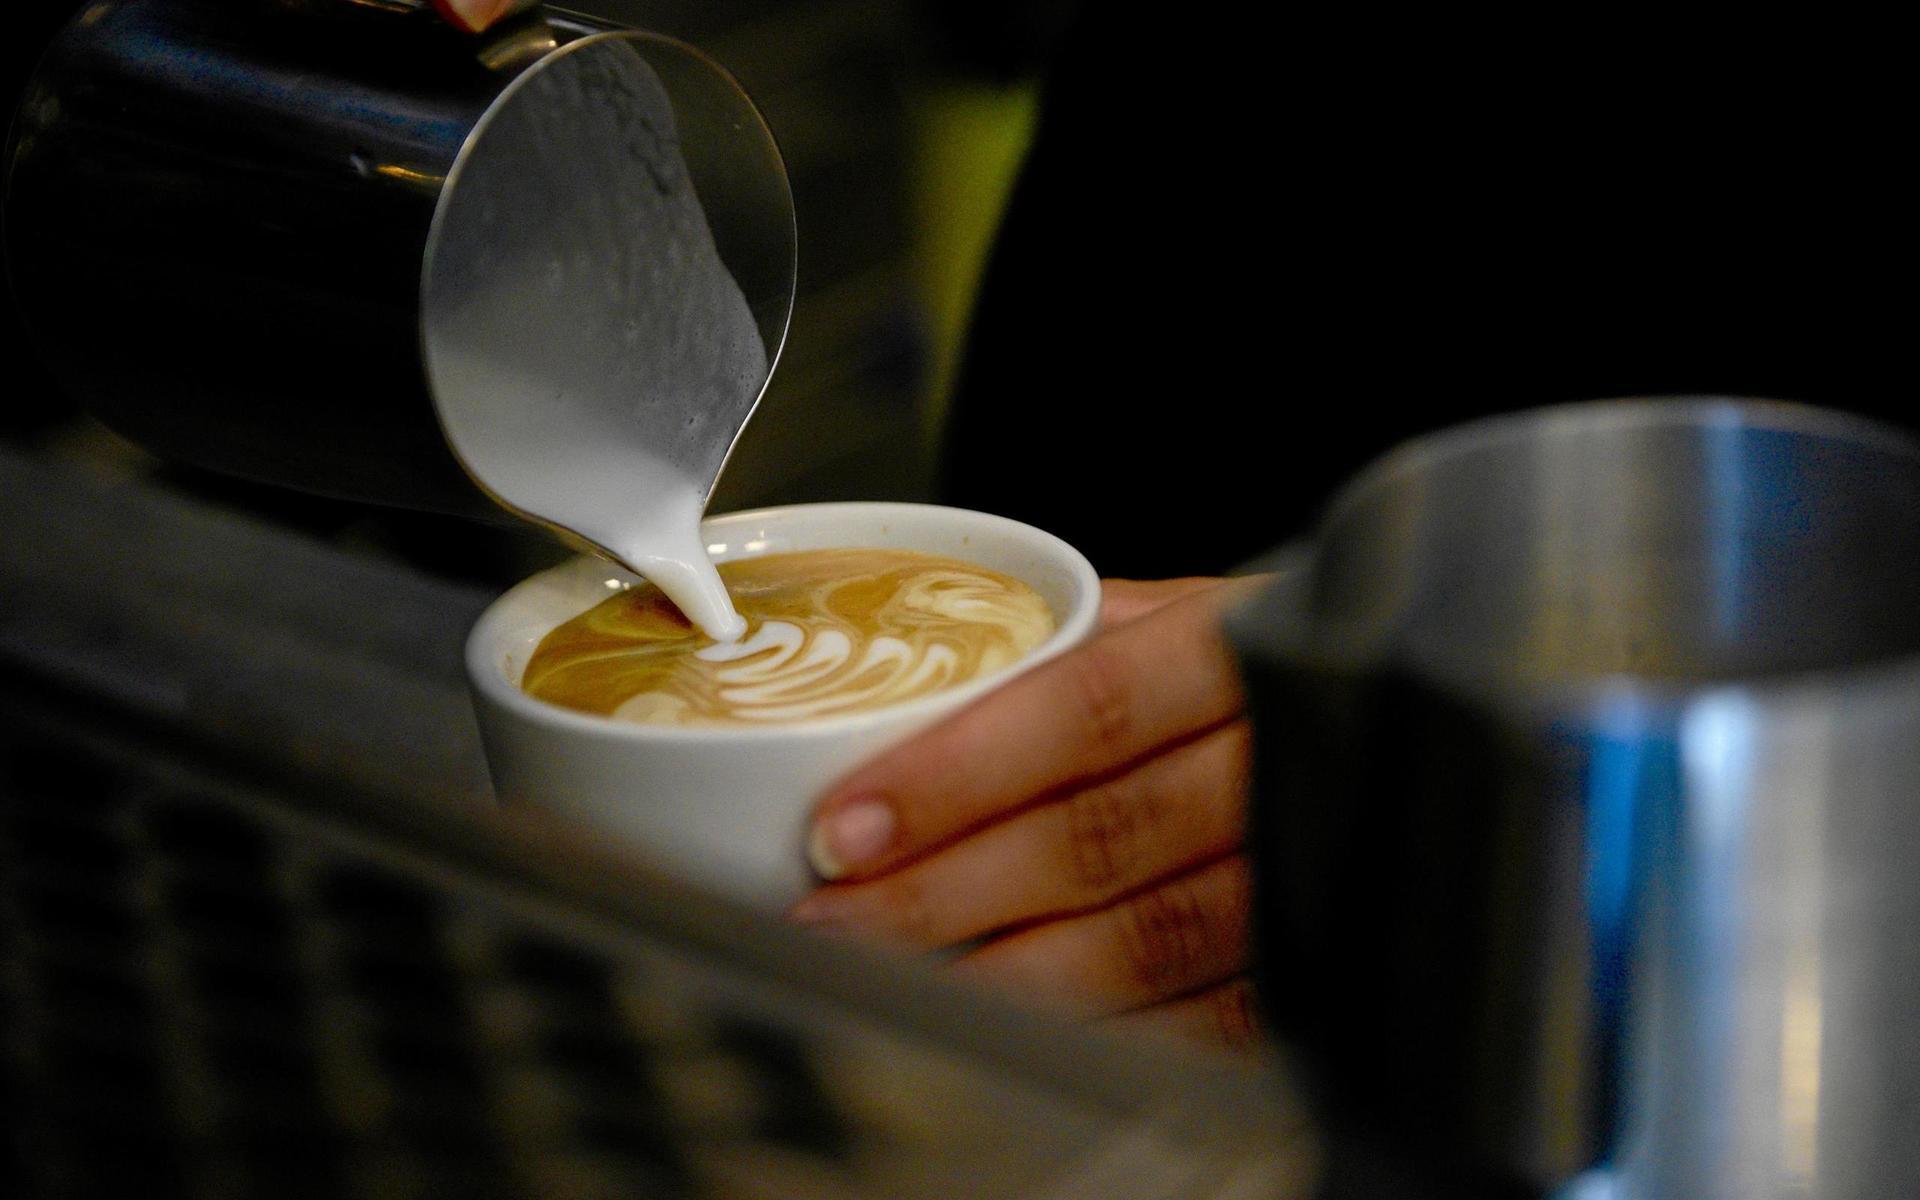 Kultur- och fritidsförvaltningen har fått i uppdrag att driva kaféet vidare nästa år om ingen annan förvaltning kan ta över.